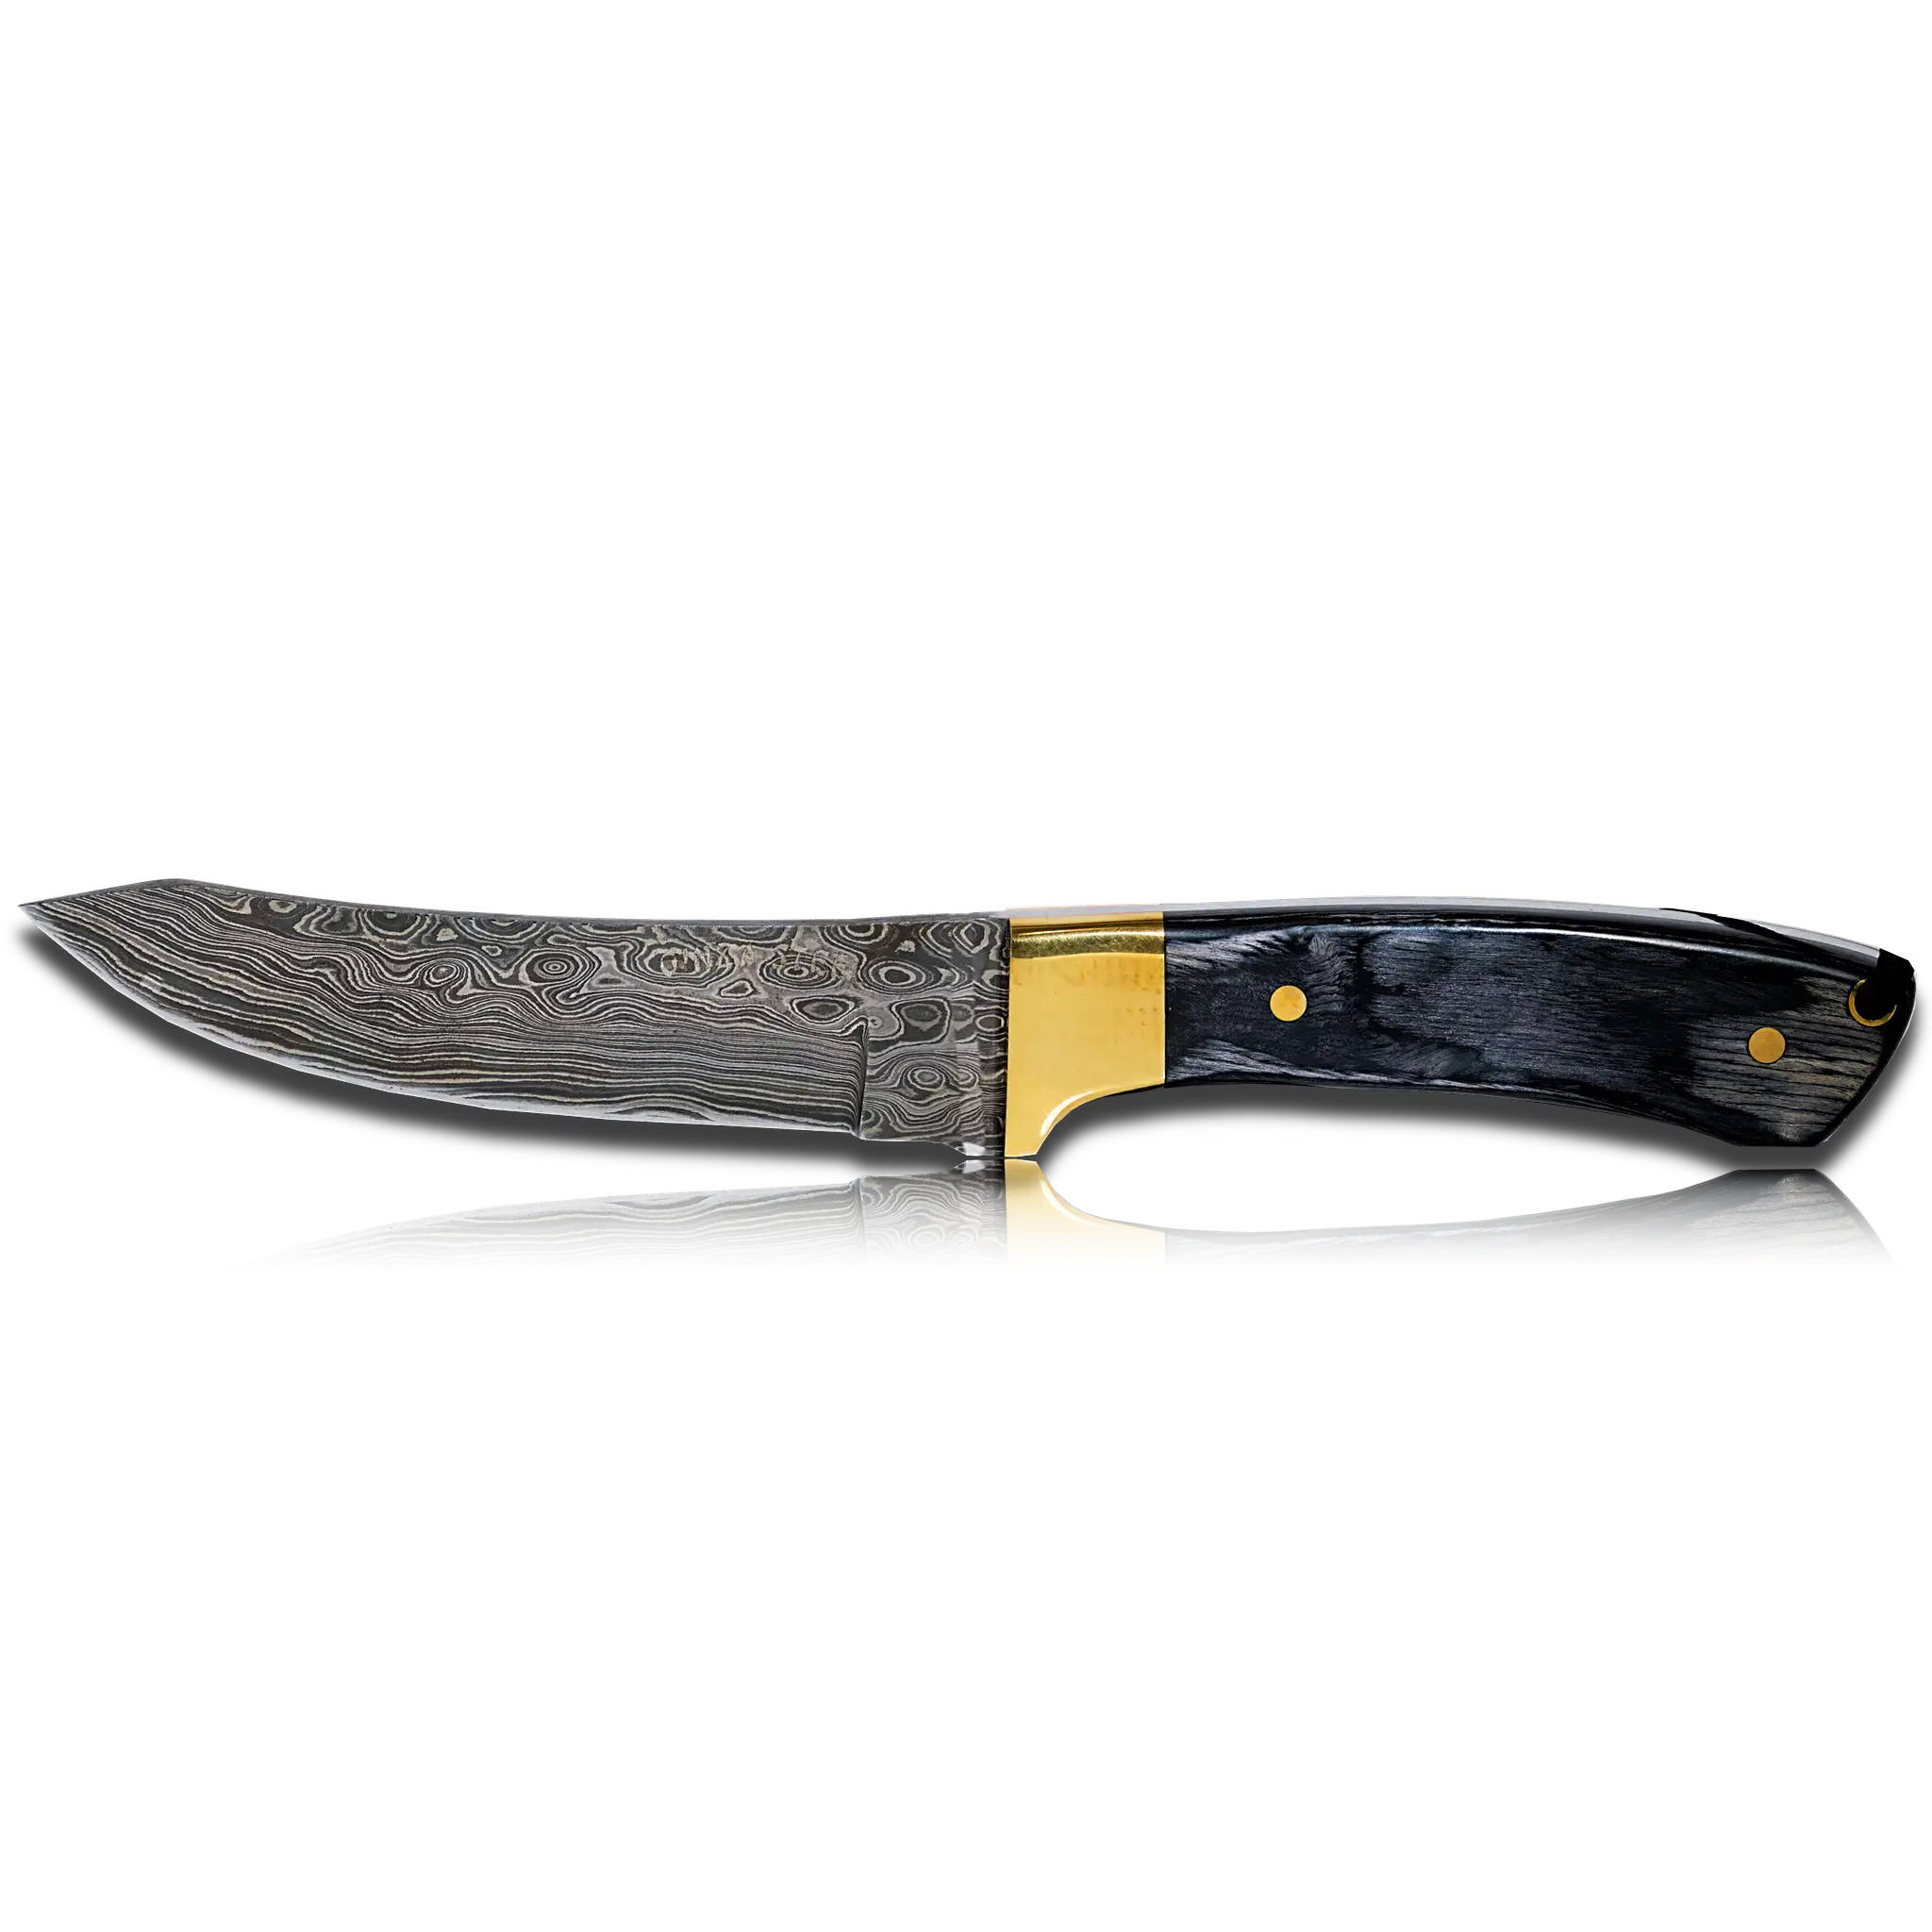 5 Inch Knife Sheath 